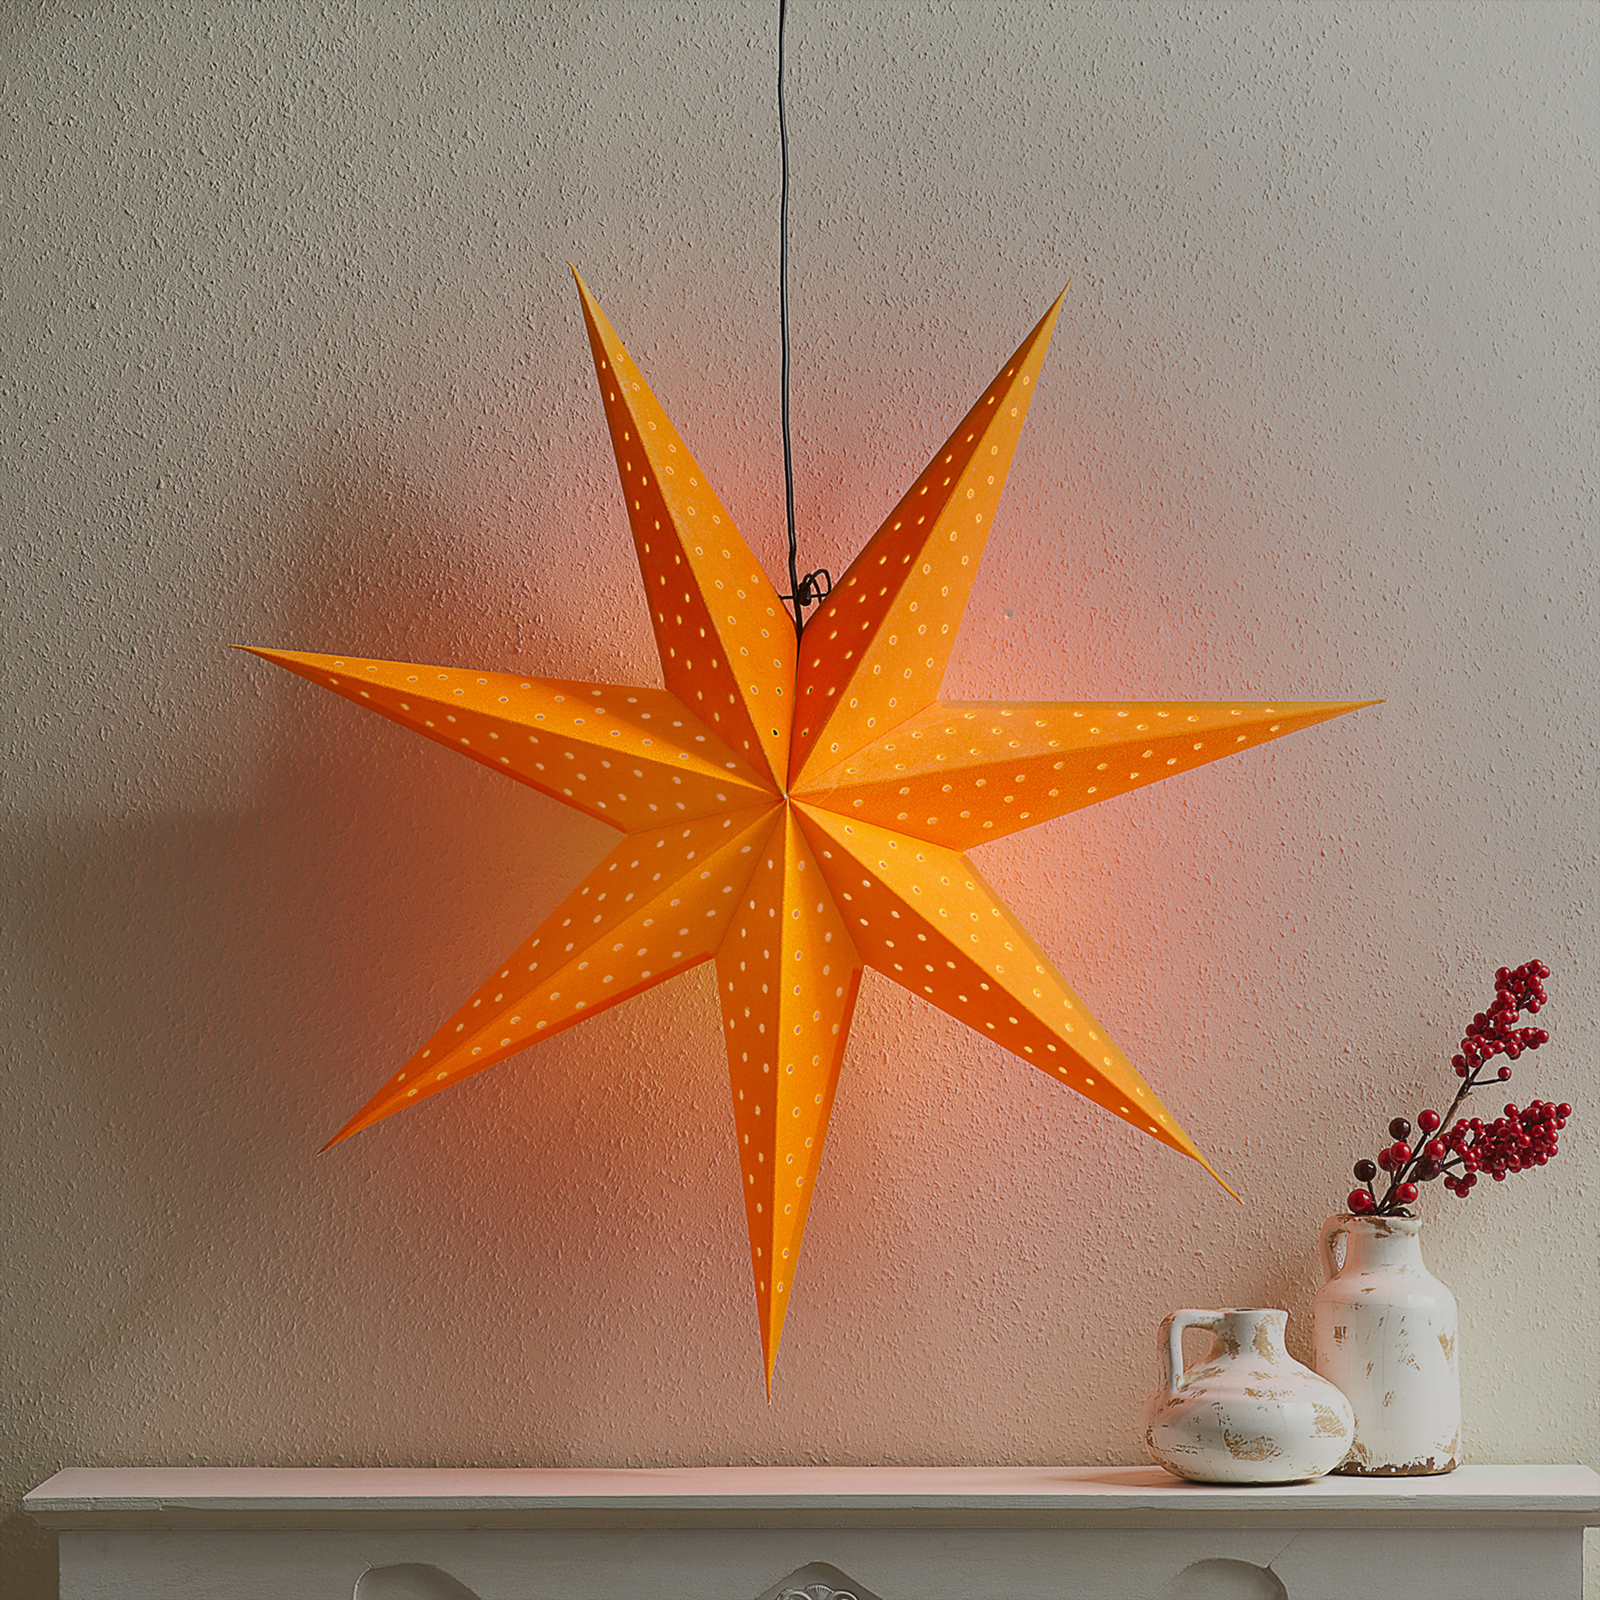 Clara stjerne til ophæng, Ø 75 cm, orange